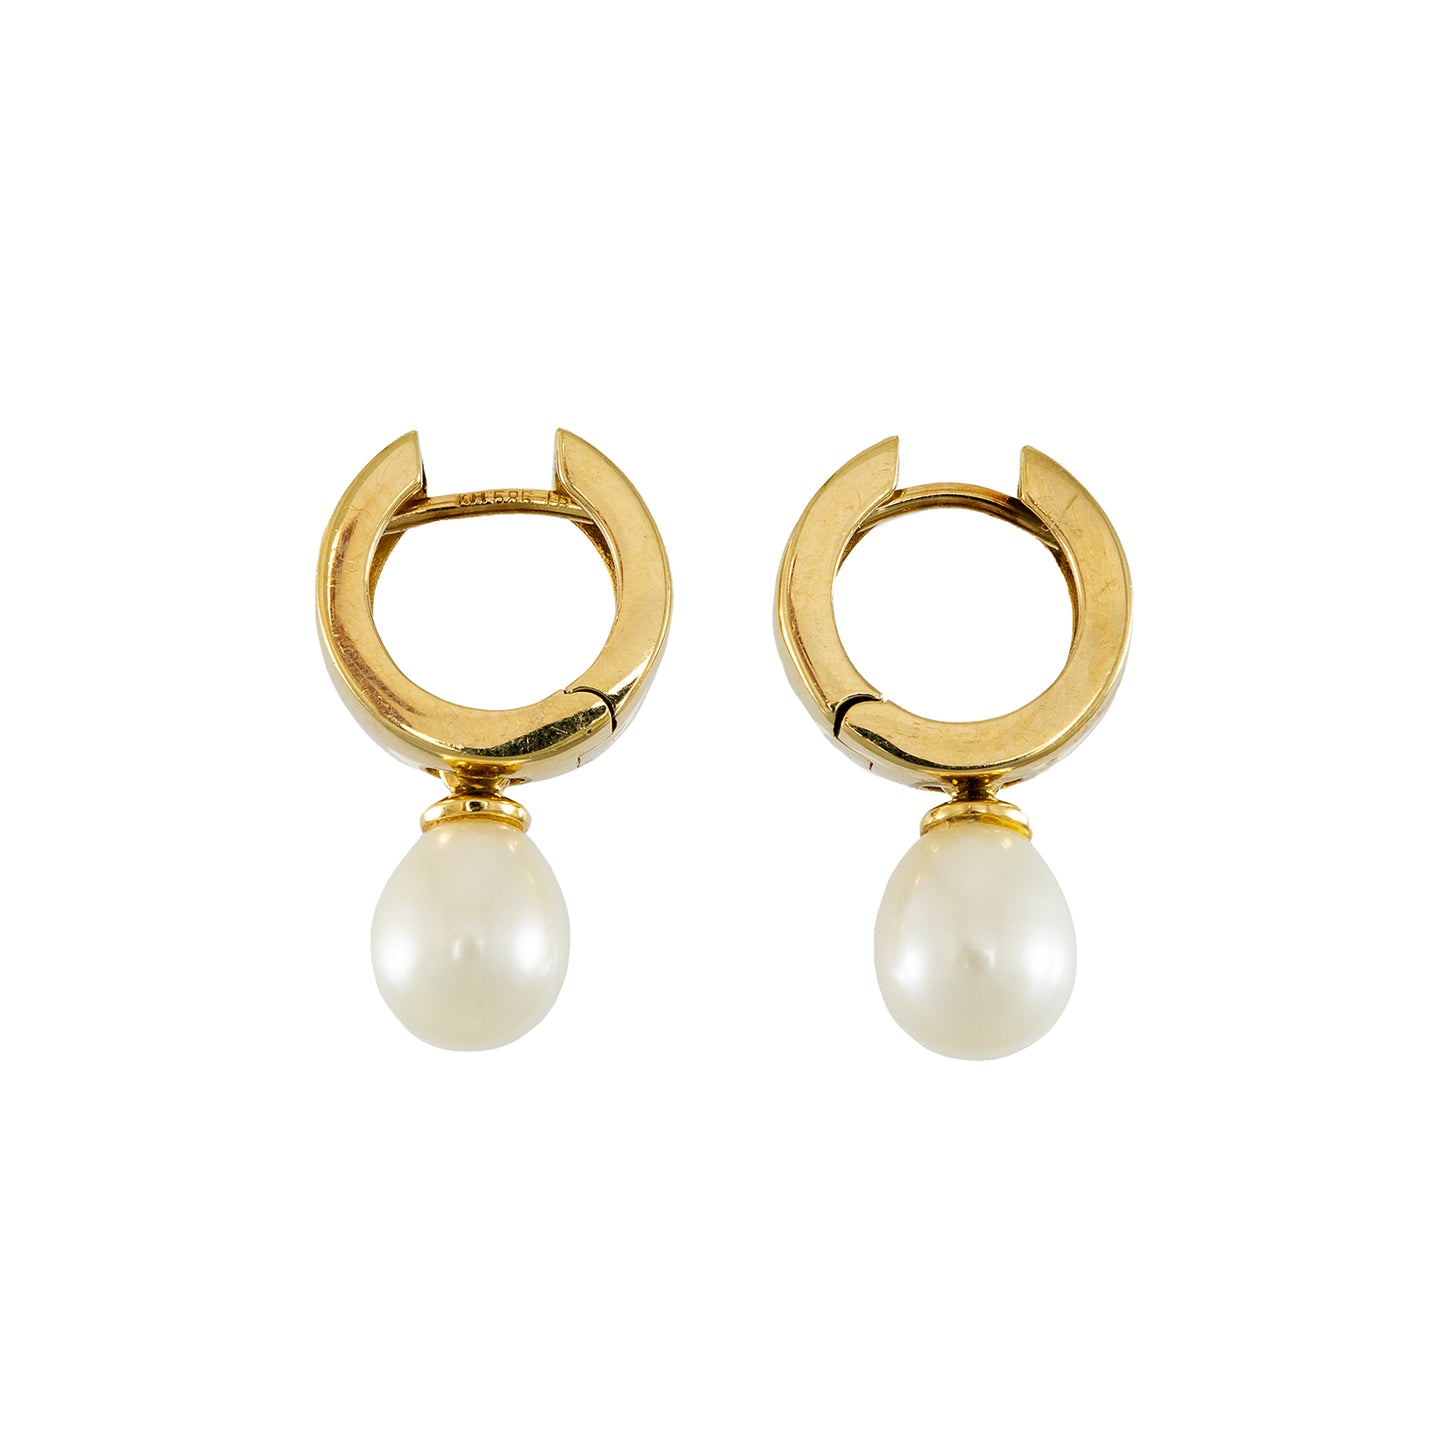 Hinged hoop earrings pearl yellow gold 585 14K gold earrings women's jewelry 